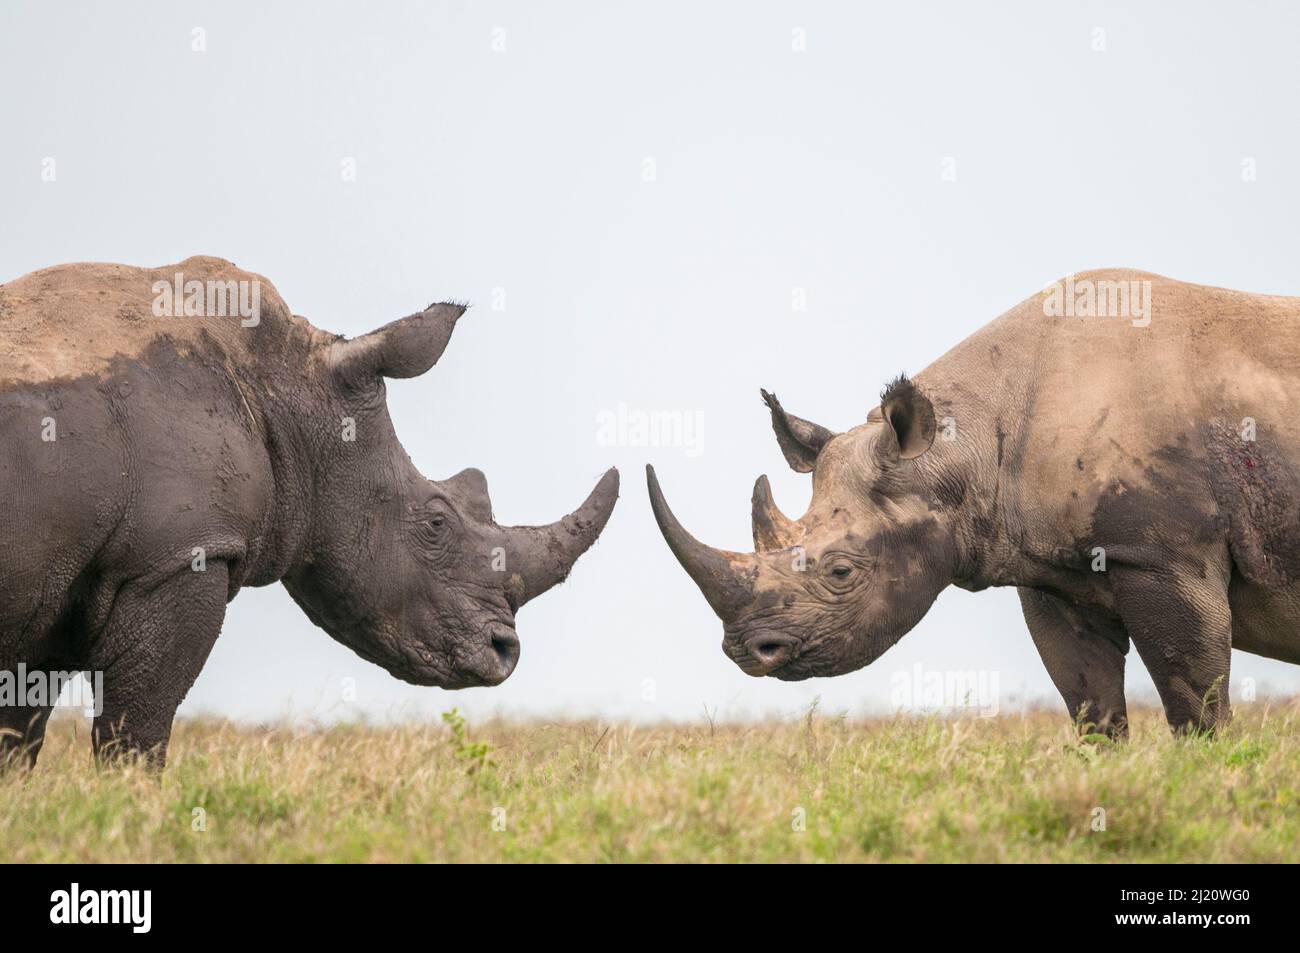 Les taureaux de rhinocéros noir (Diceros bicornis) et de rhinocéros blanc (Ceratotherium simum) sont orientés vers le haut. Solio Game Reserve, Laikipia, Kenya. Septembre. Banque D'Images